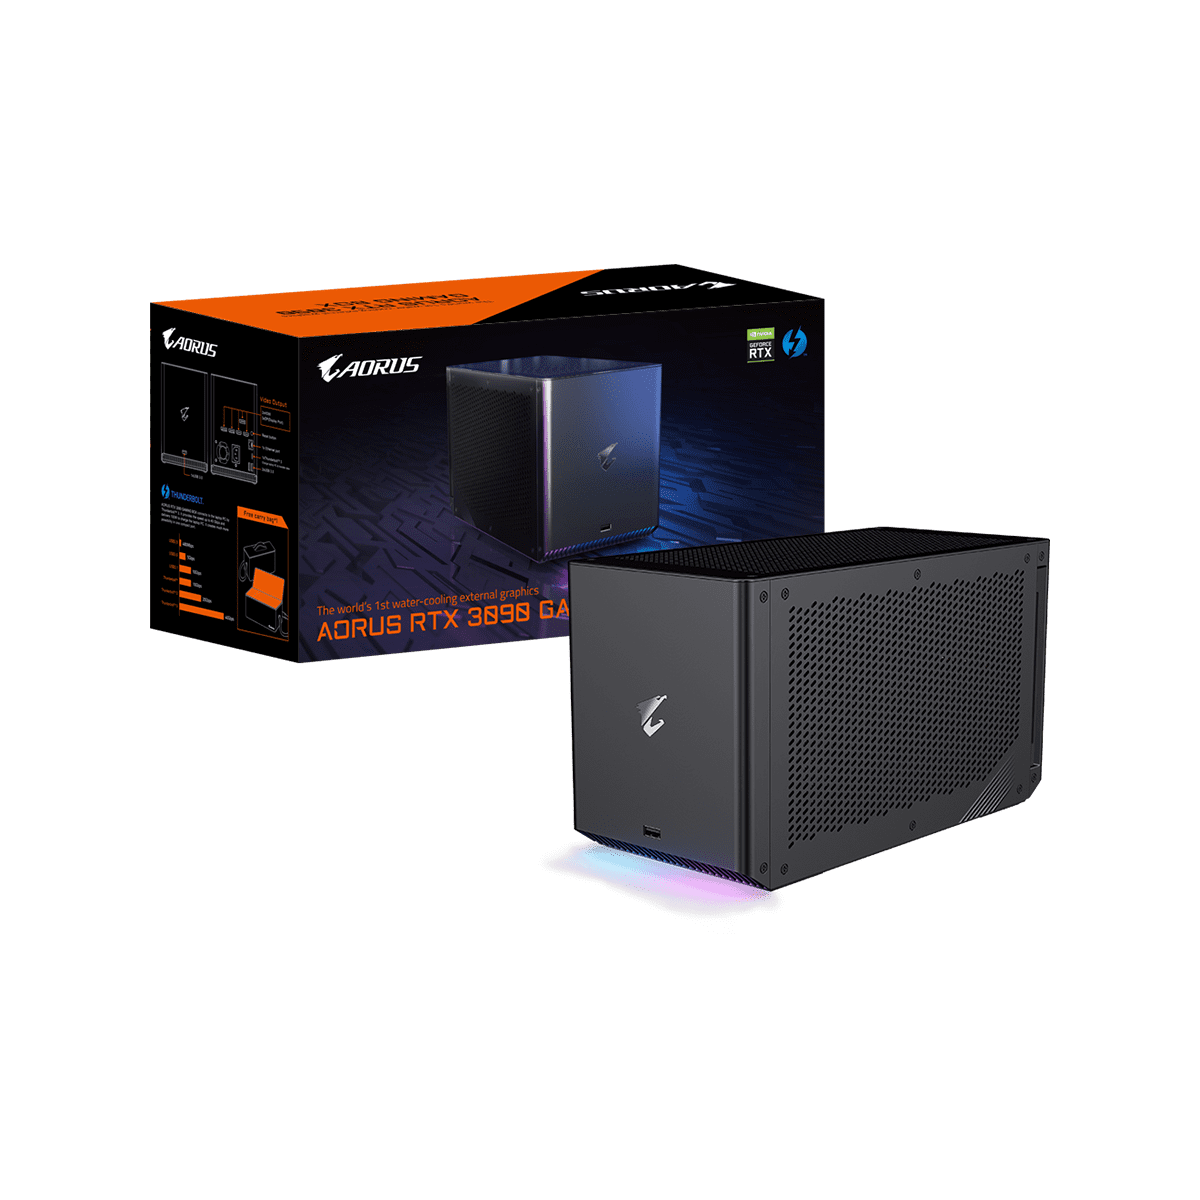 GeForce RTX3090 | PCパーツメーカーの総合サプライヤーCFD販売の法人 